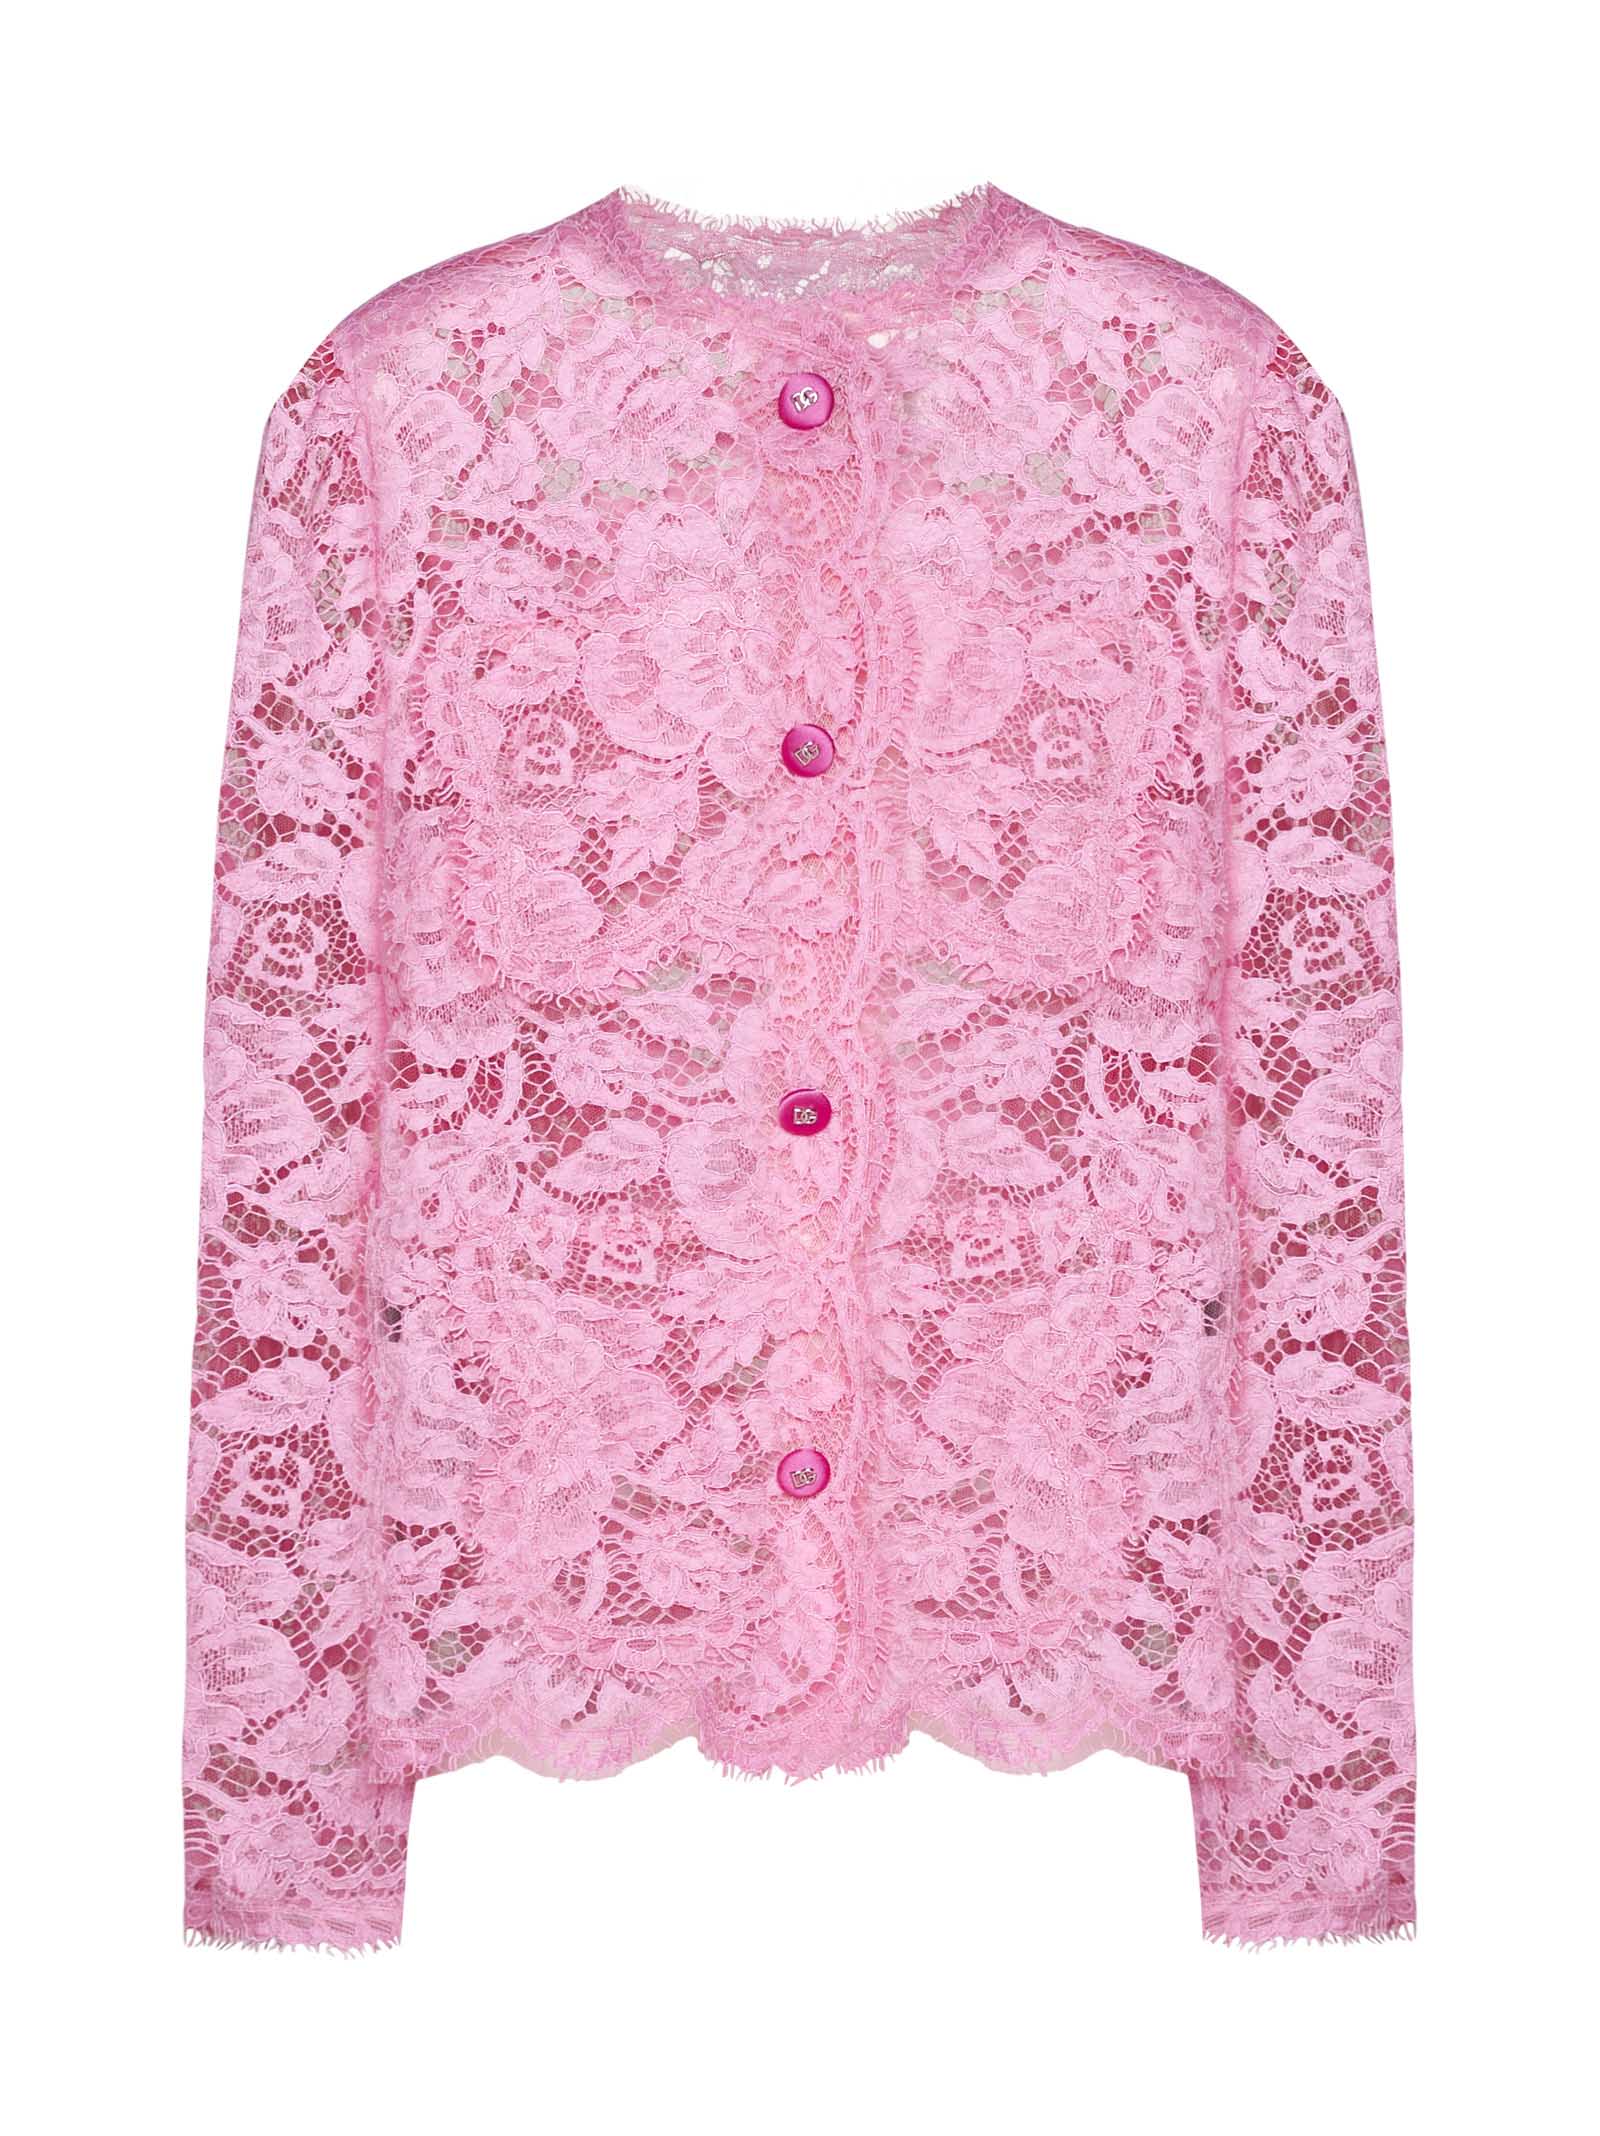 Dolce & Gabbana Blazer In Pink